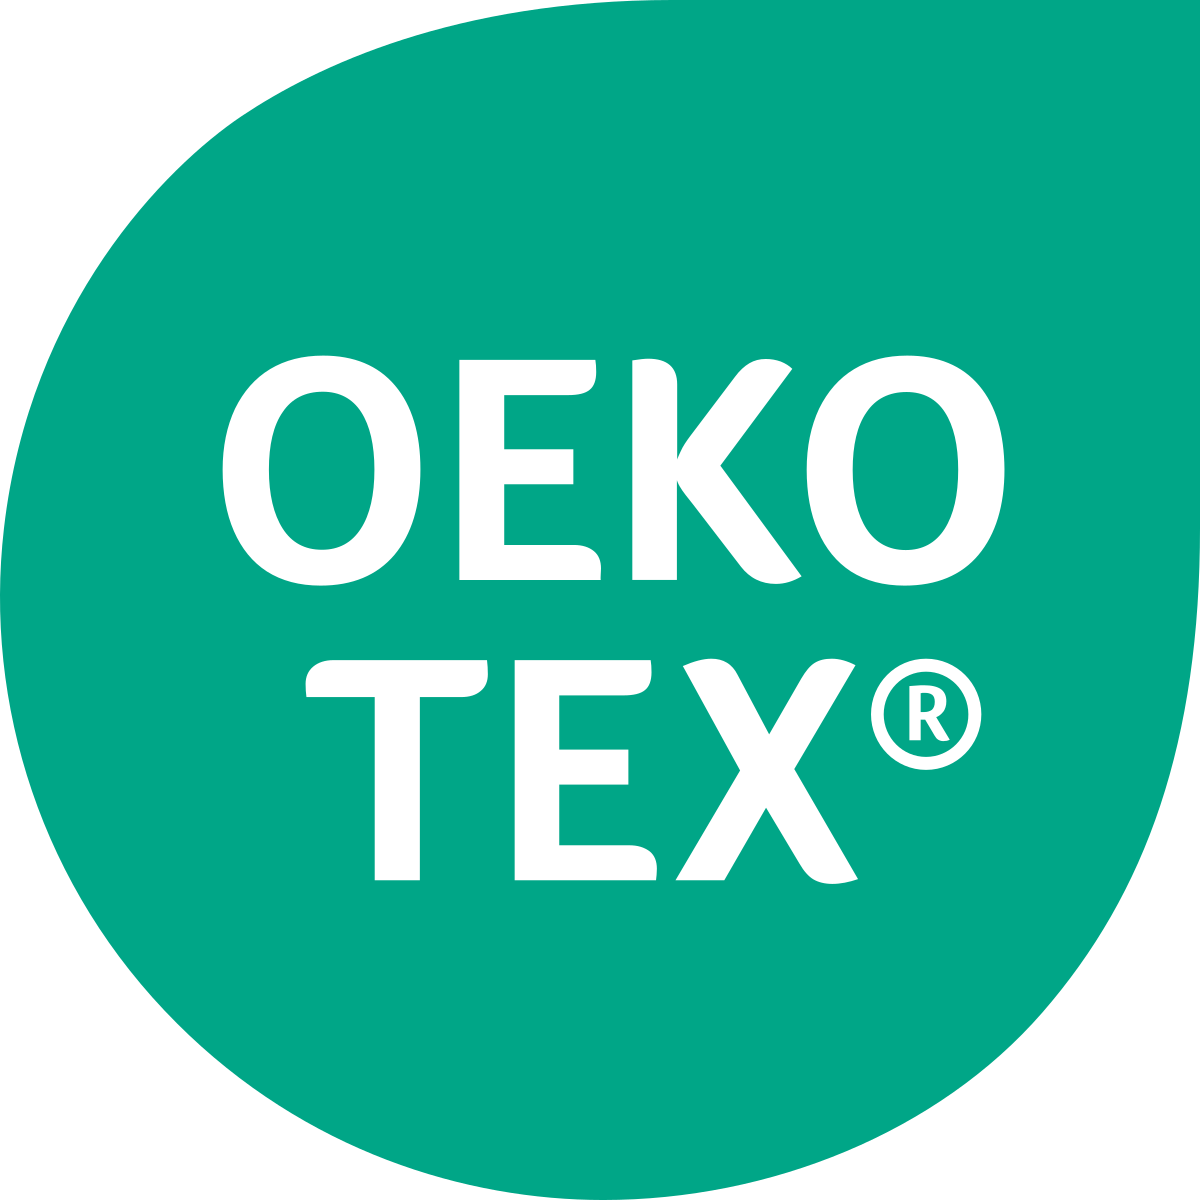 icone de oekotex